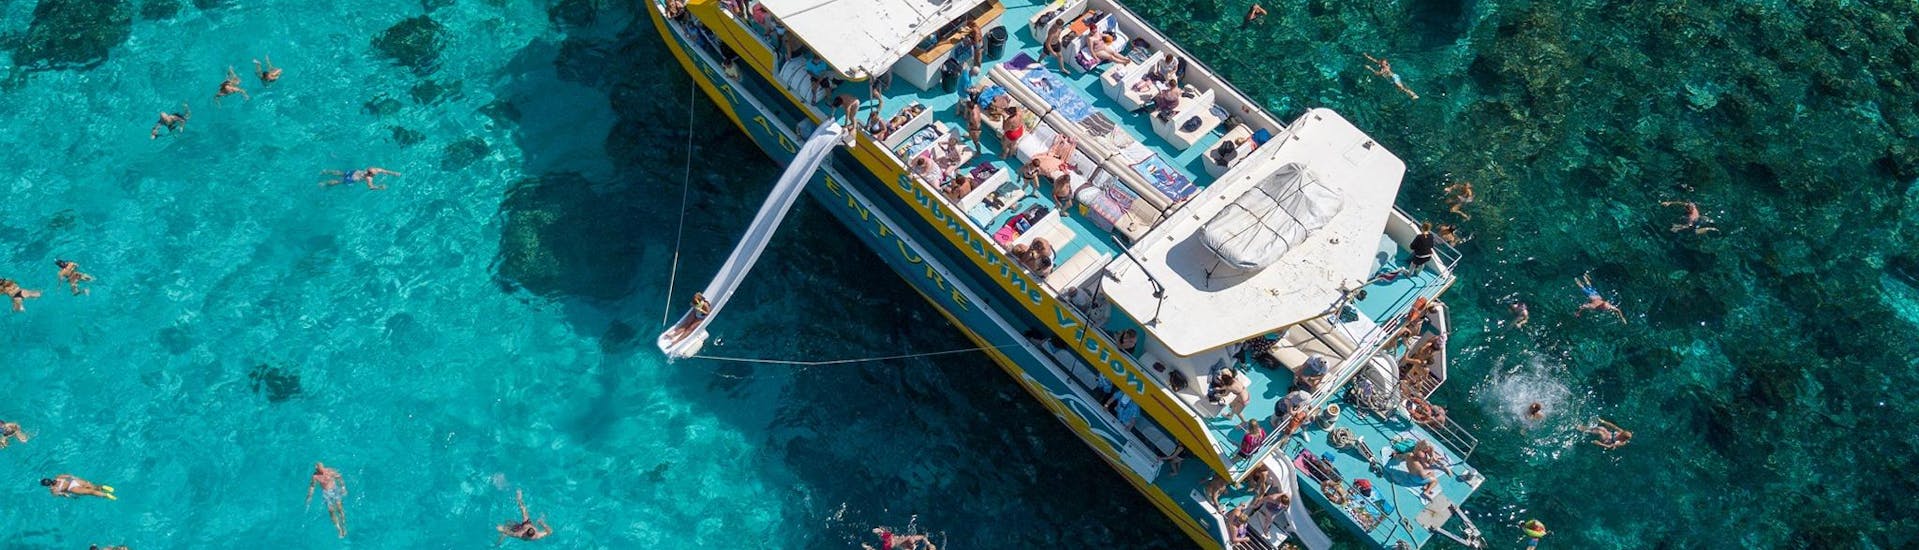 Durante l'escursione catamarano a Laguna Blu e Cristallina a Comino organizzata da Sea Adventure Excursions dei passeggeri stanno ammirando il paesaggio spettacolare e i suoi colori di Malta.